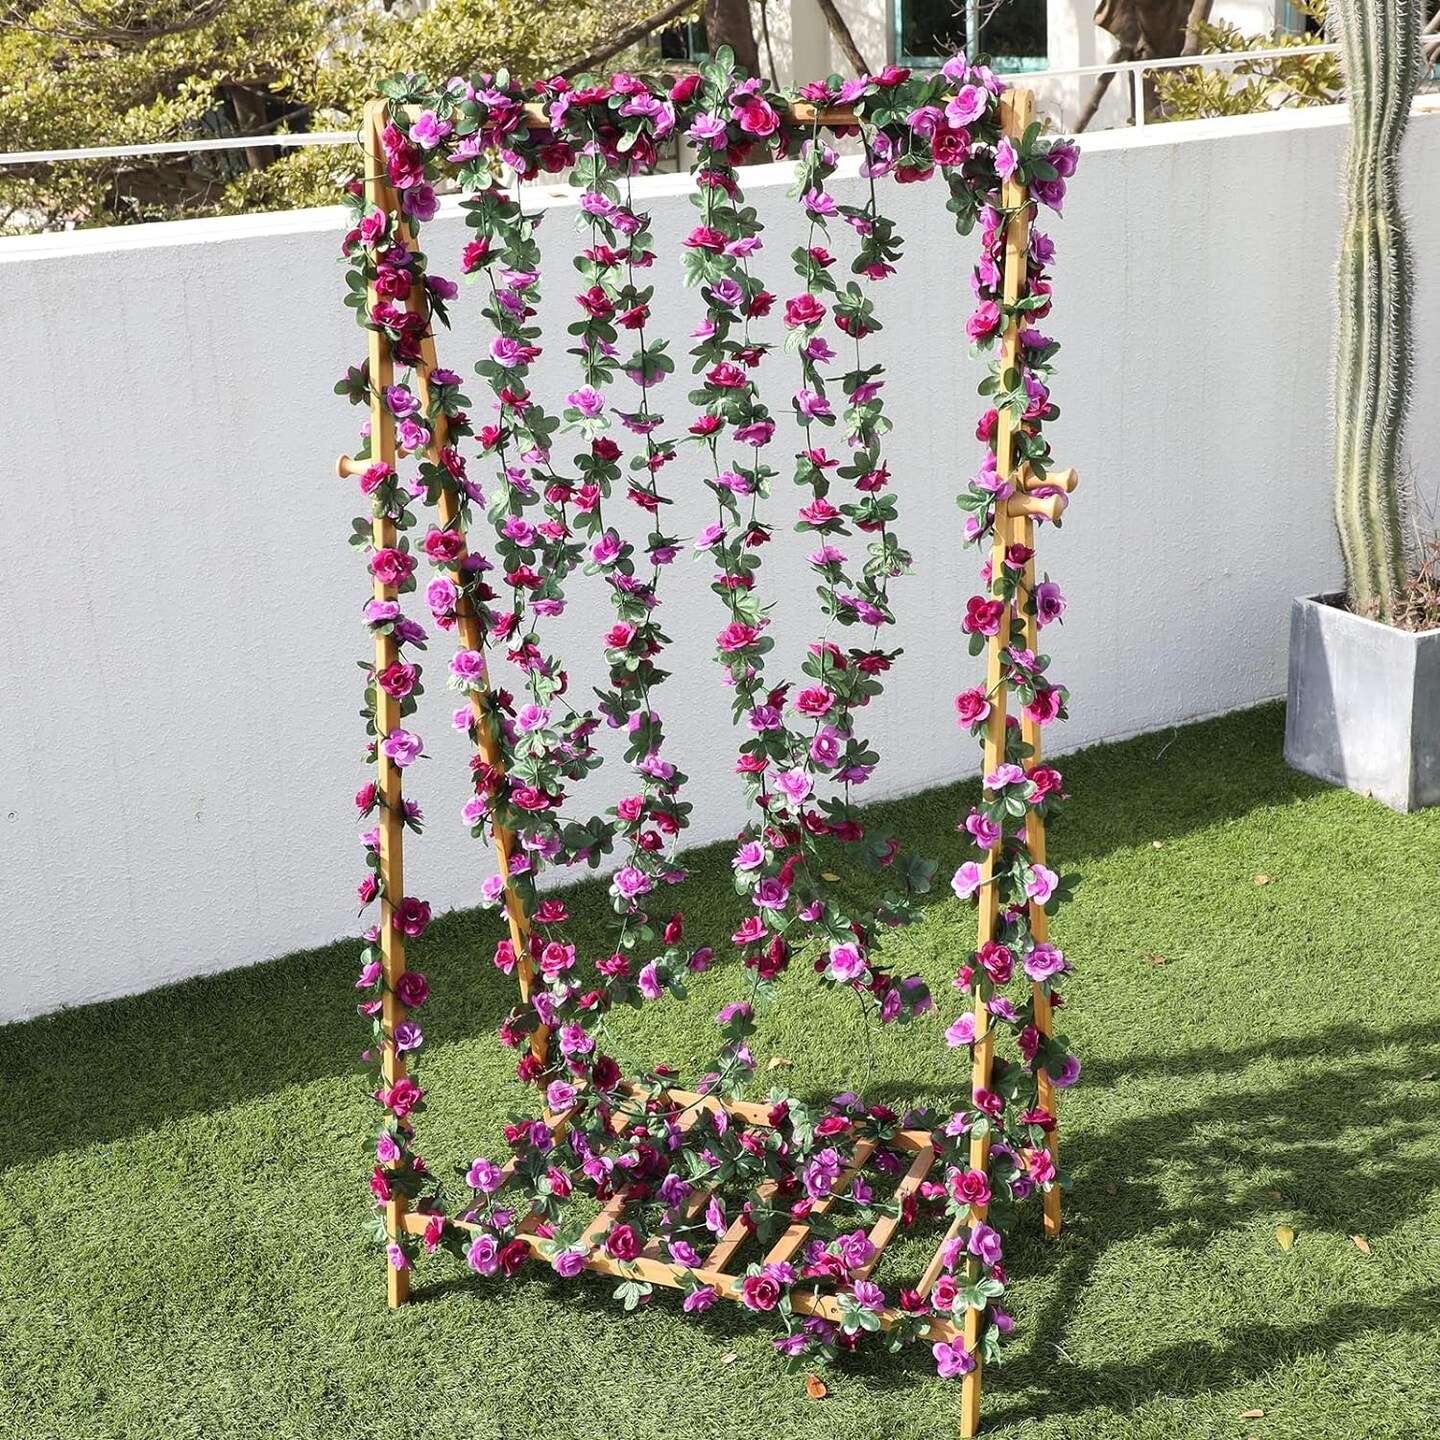 41 ft. Decorative Flower Garland Rose Vines 5 packs